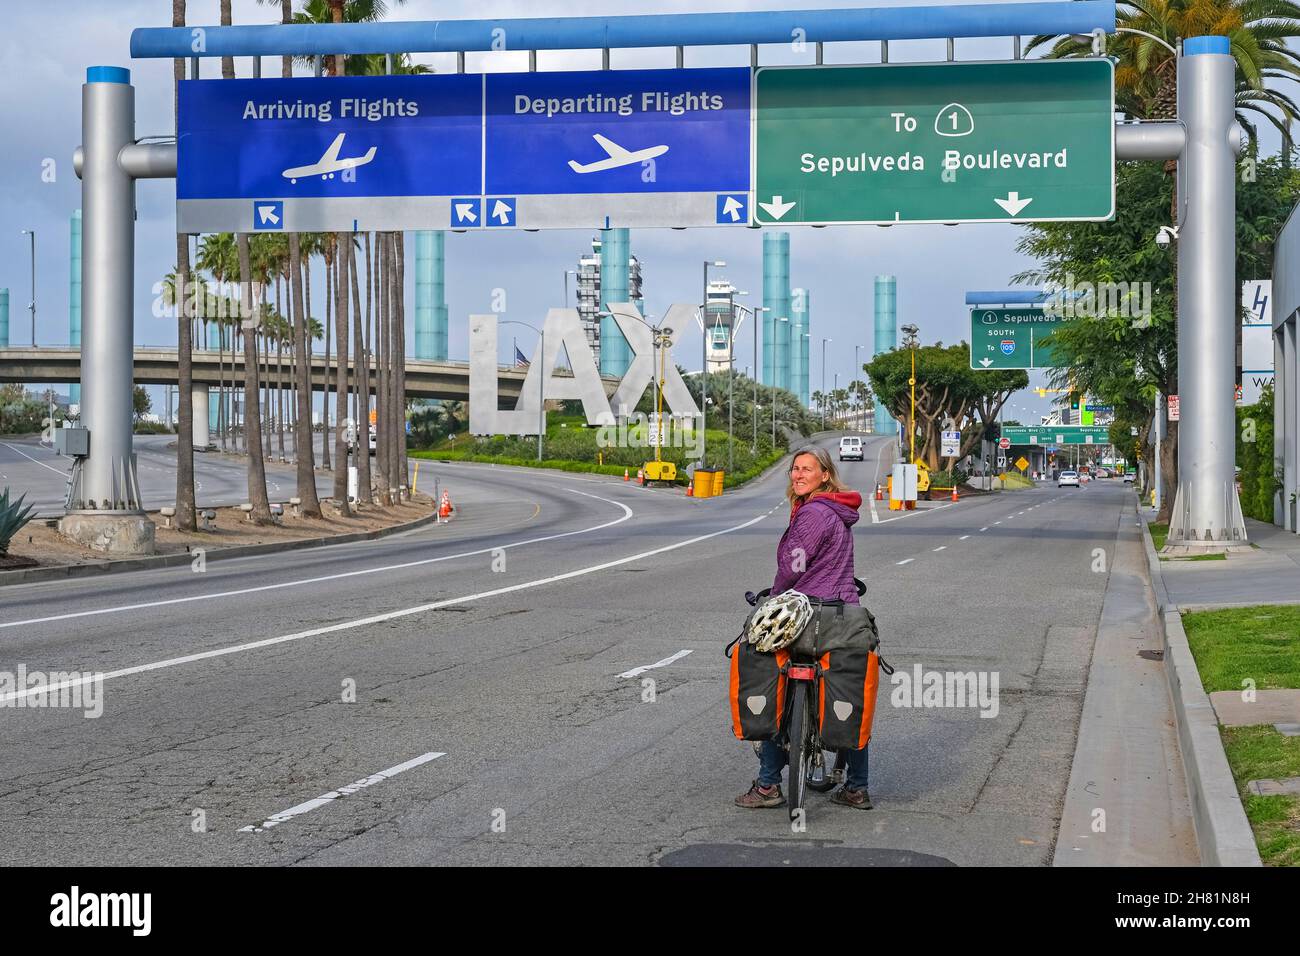 Cycliste arrivant à LAX, aéroport international de Los Angeles à Westchester, Californie, États-Unis Banque D'Images